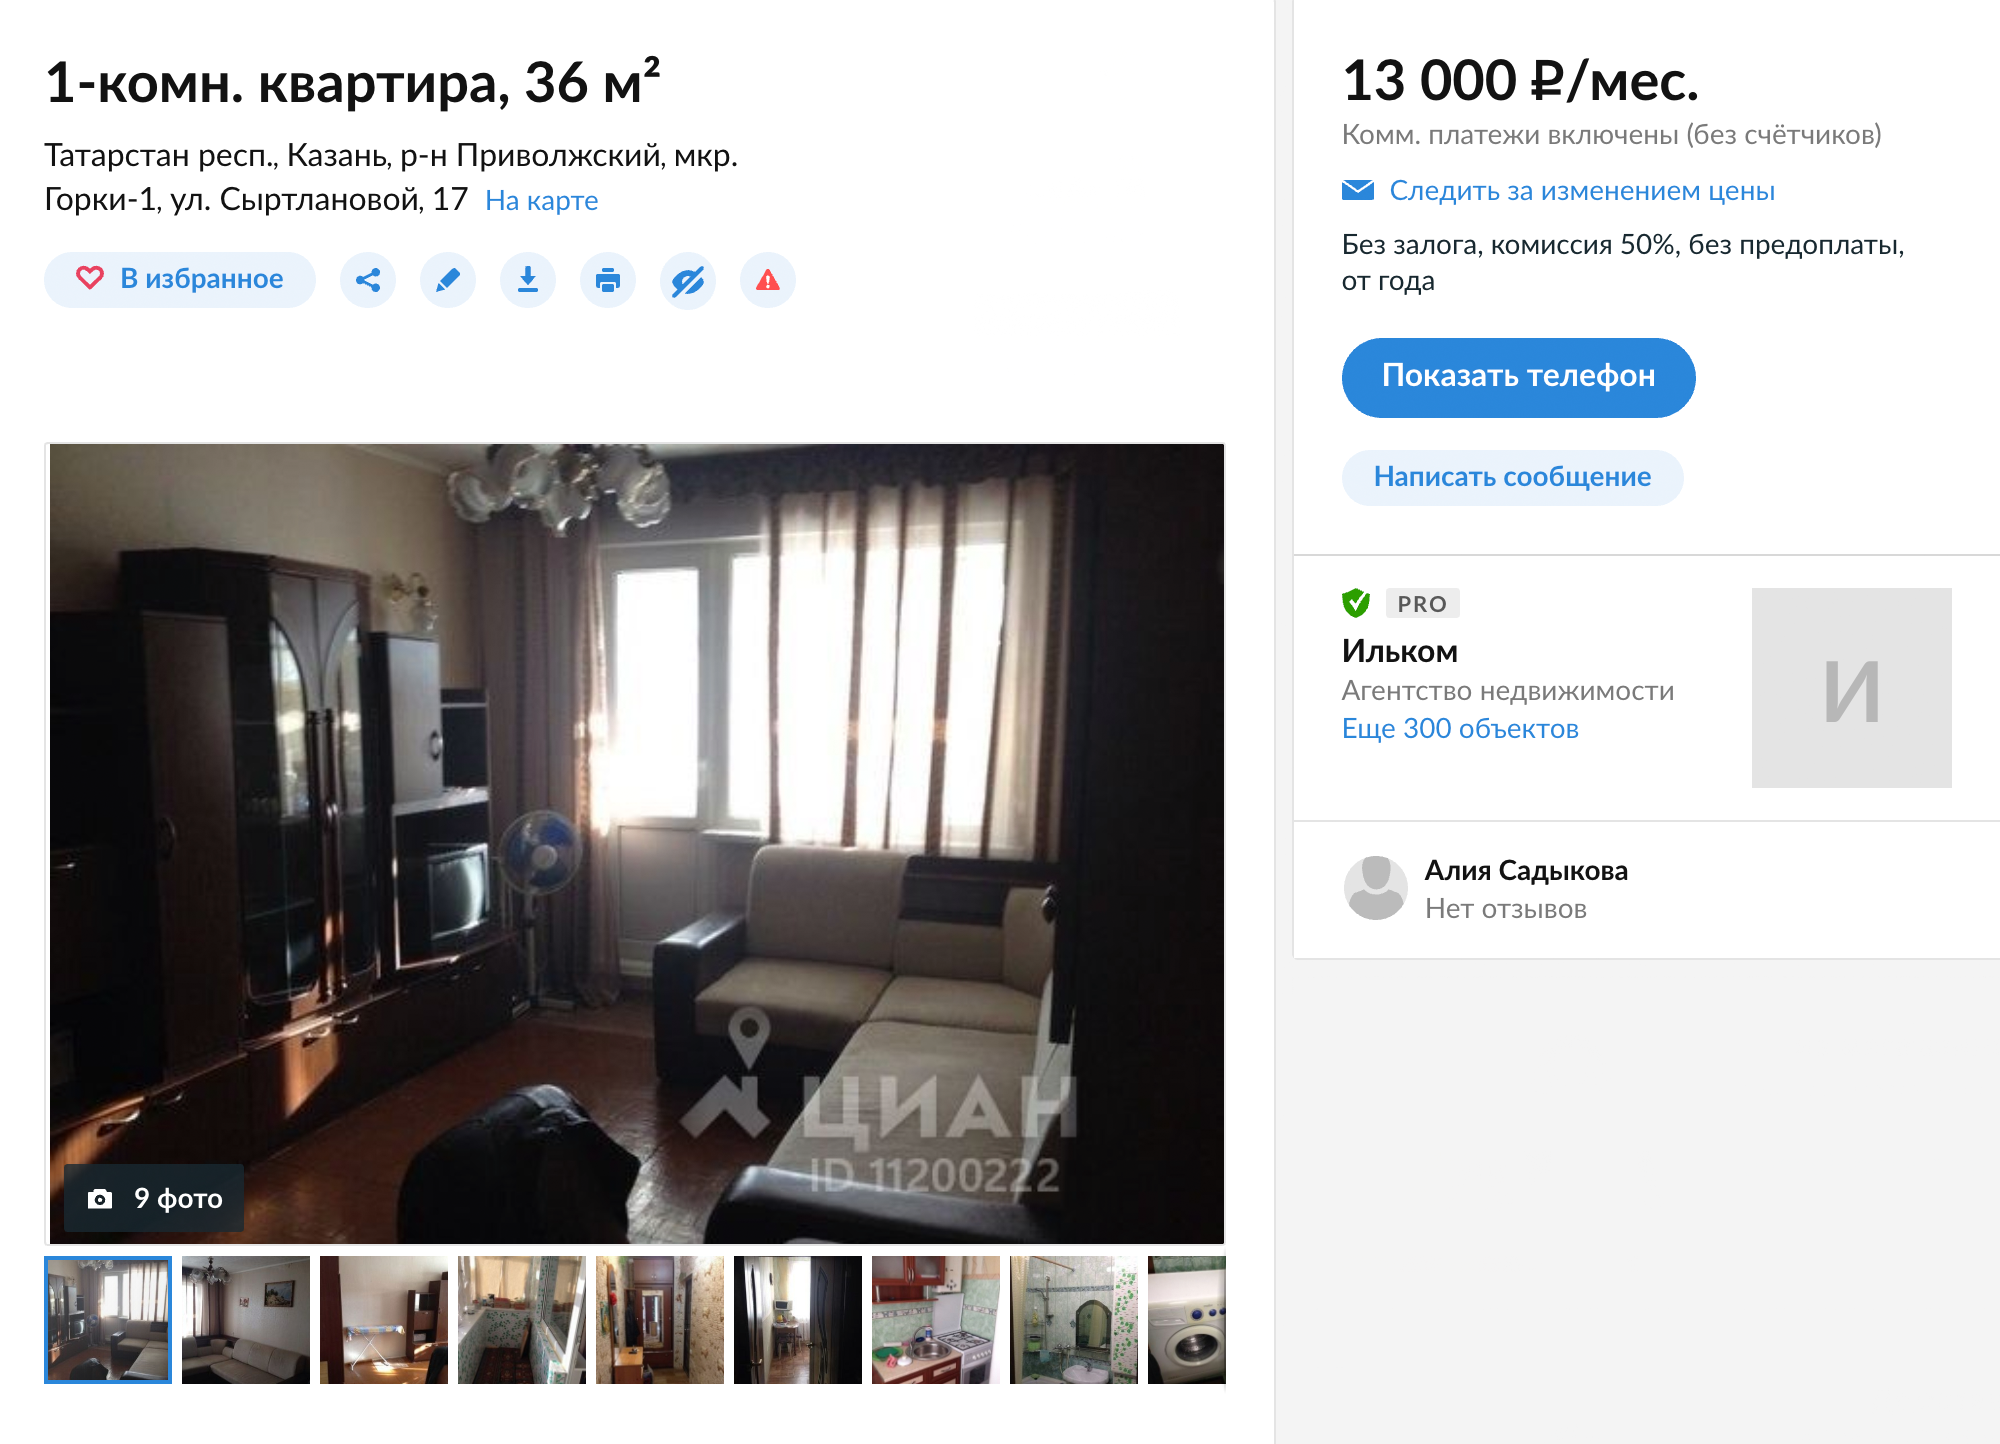 Небольшую квартиру на окраине города сдают за 13 тысяч рублей, коммунальные платежи включены в стоимость. Это хорошее предложение: в среднем жилье в этом районе сдают на две тысячи дороже